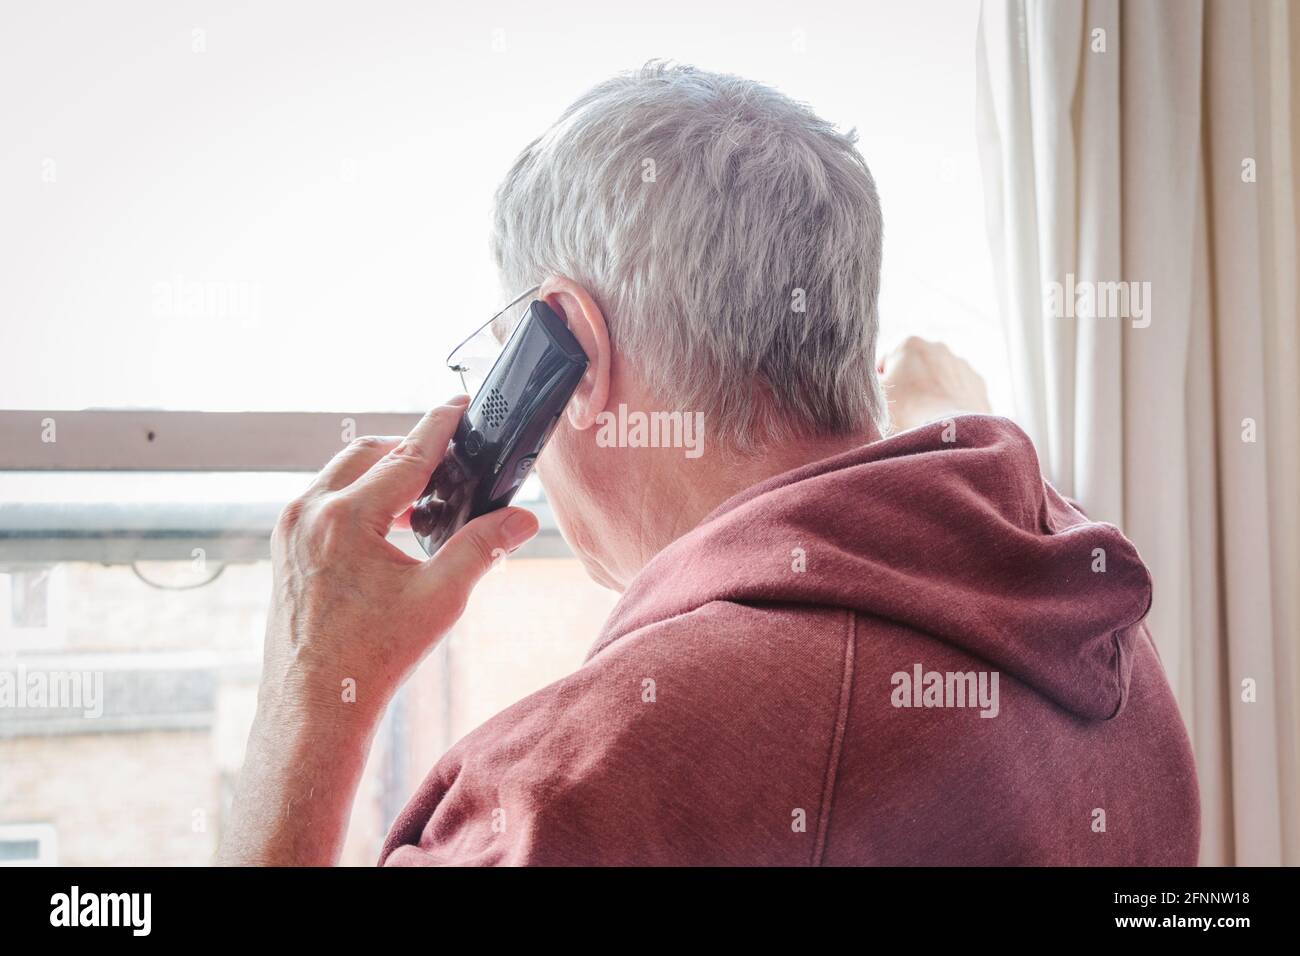 Vecchio uomo dai capelli grigi che usa il telefono che guarda fuori da una finestra, Londra, Regno Unito Foto Stock